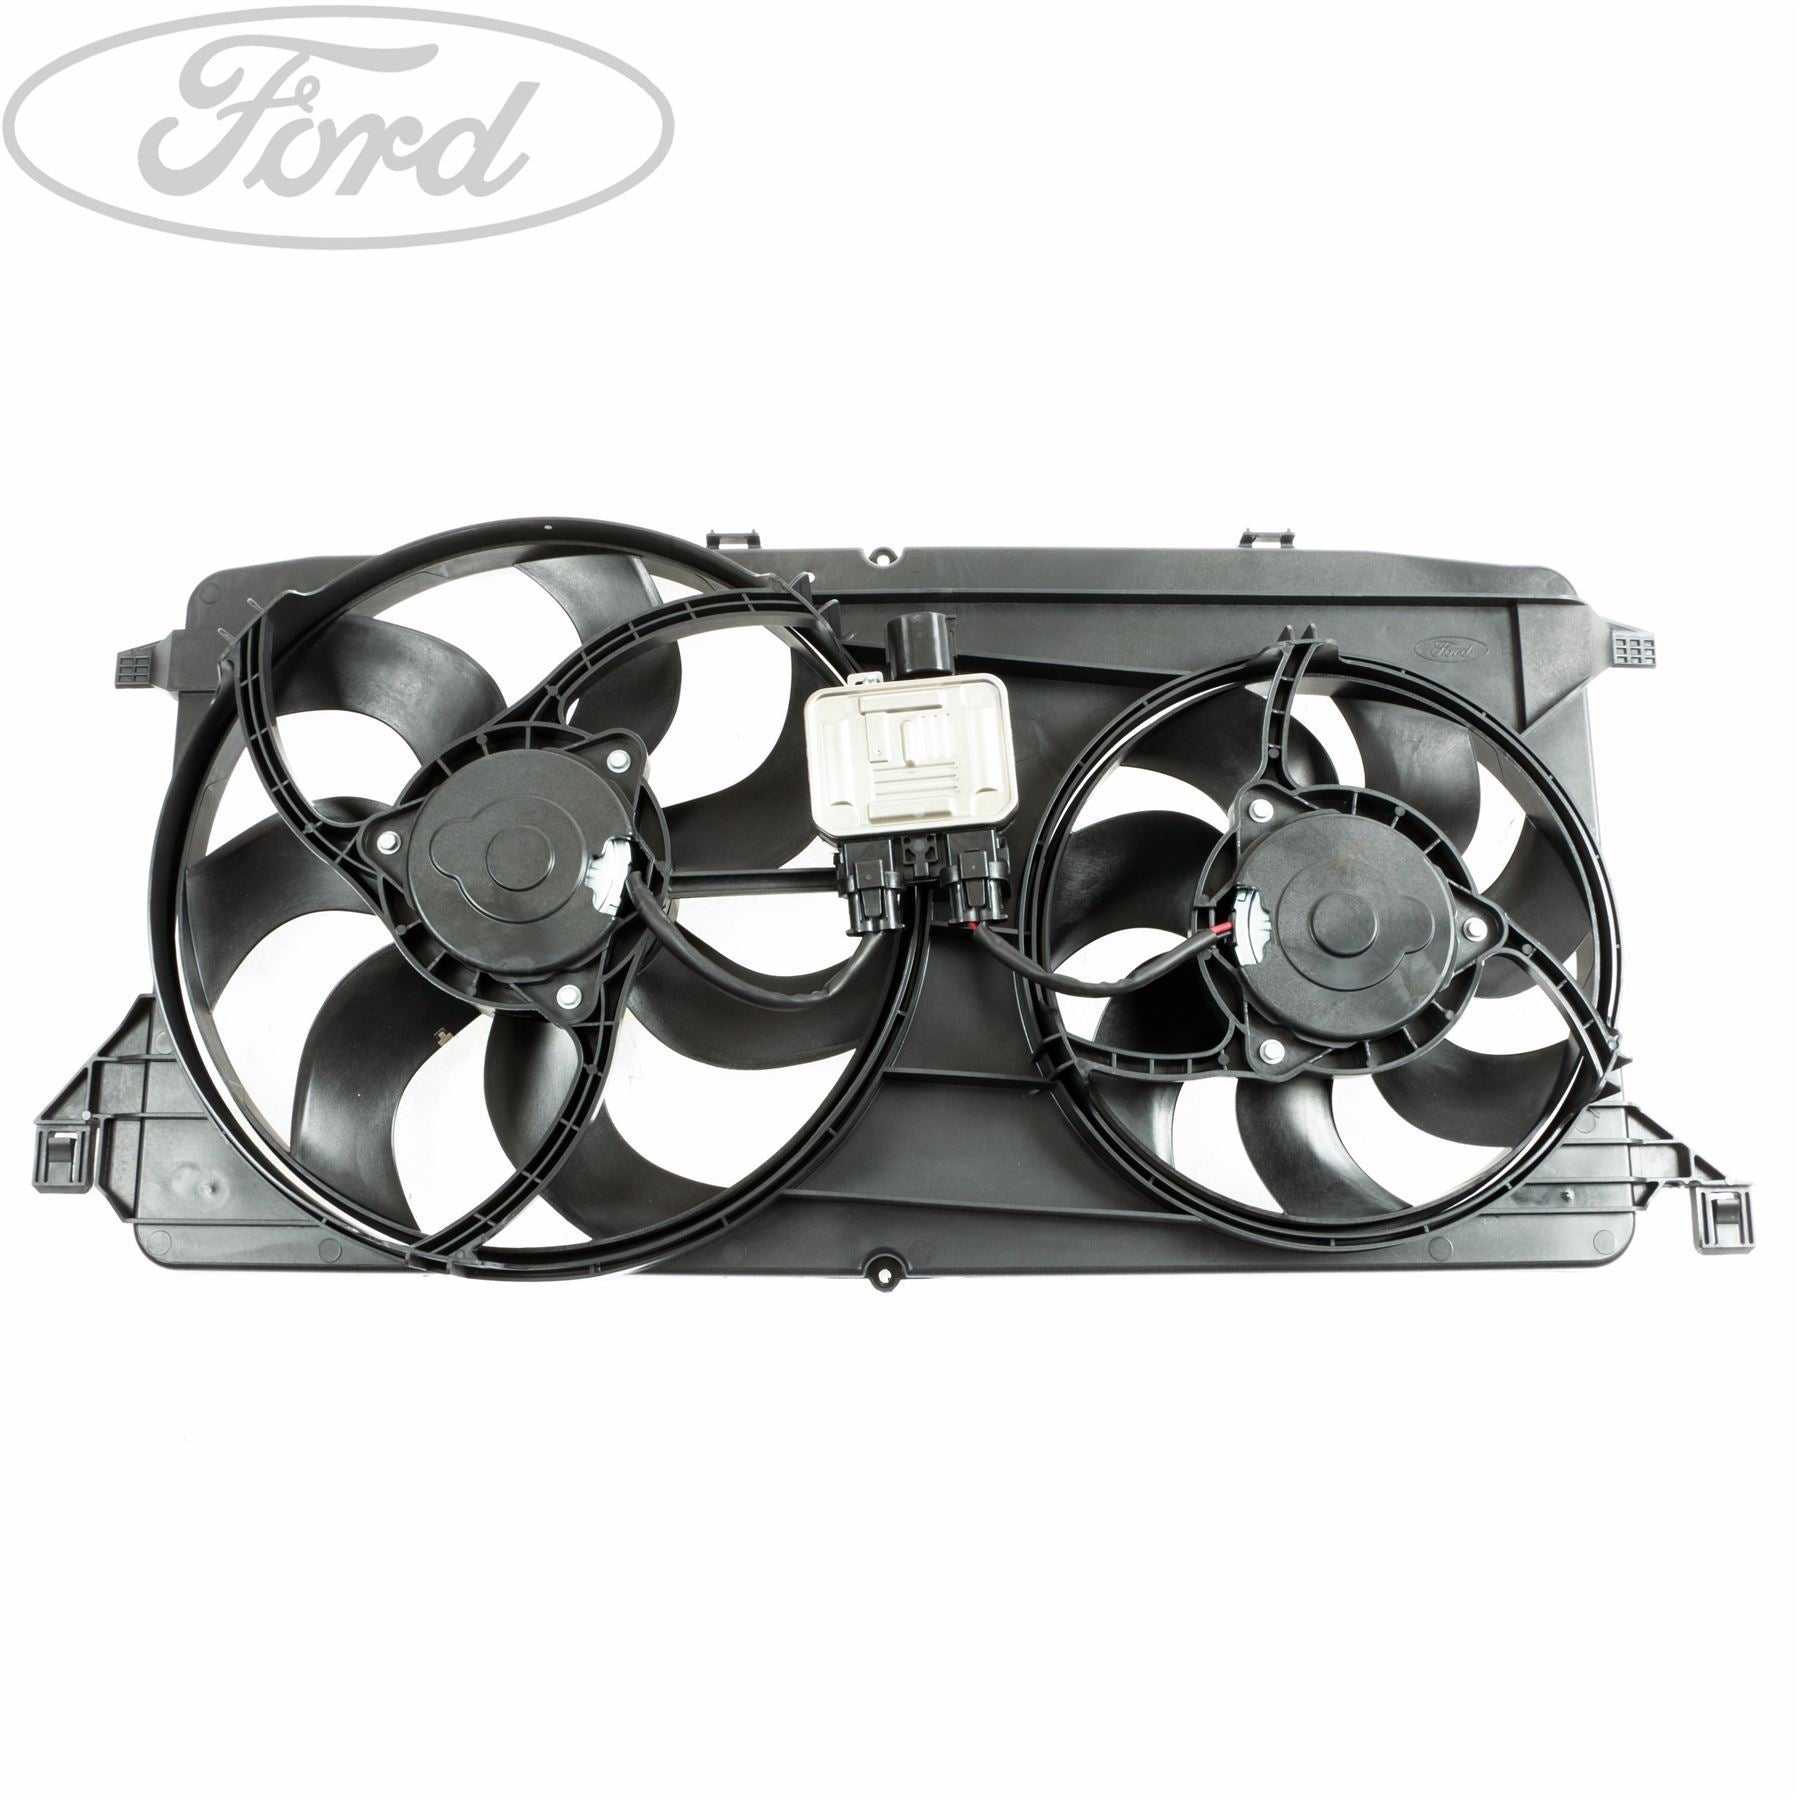 Ford, TRANSIT 2.2 TDCI 2.3 16V ENGINE COOLING FAN & MOTOR